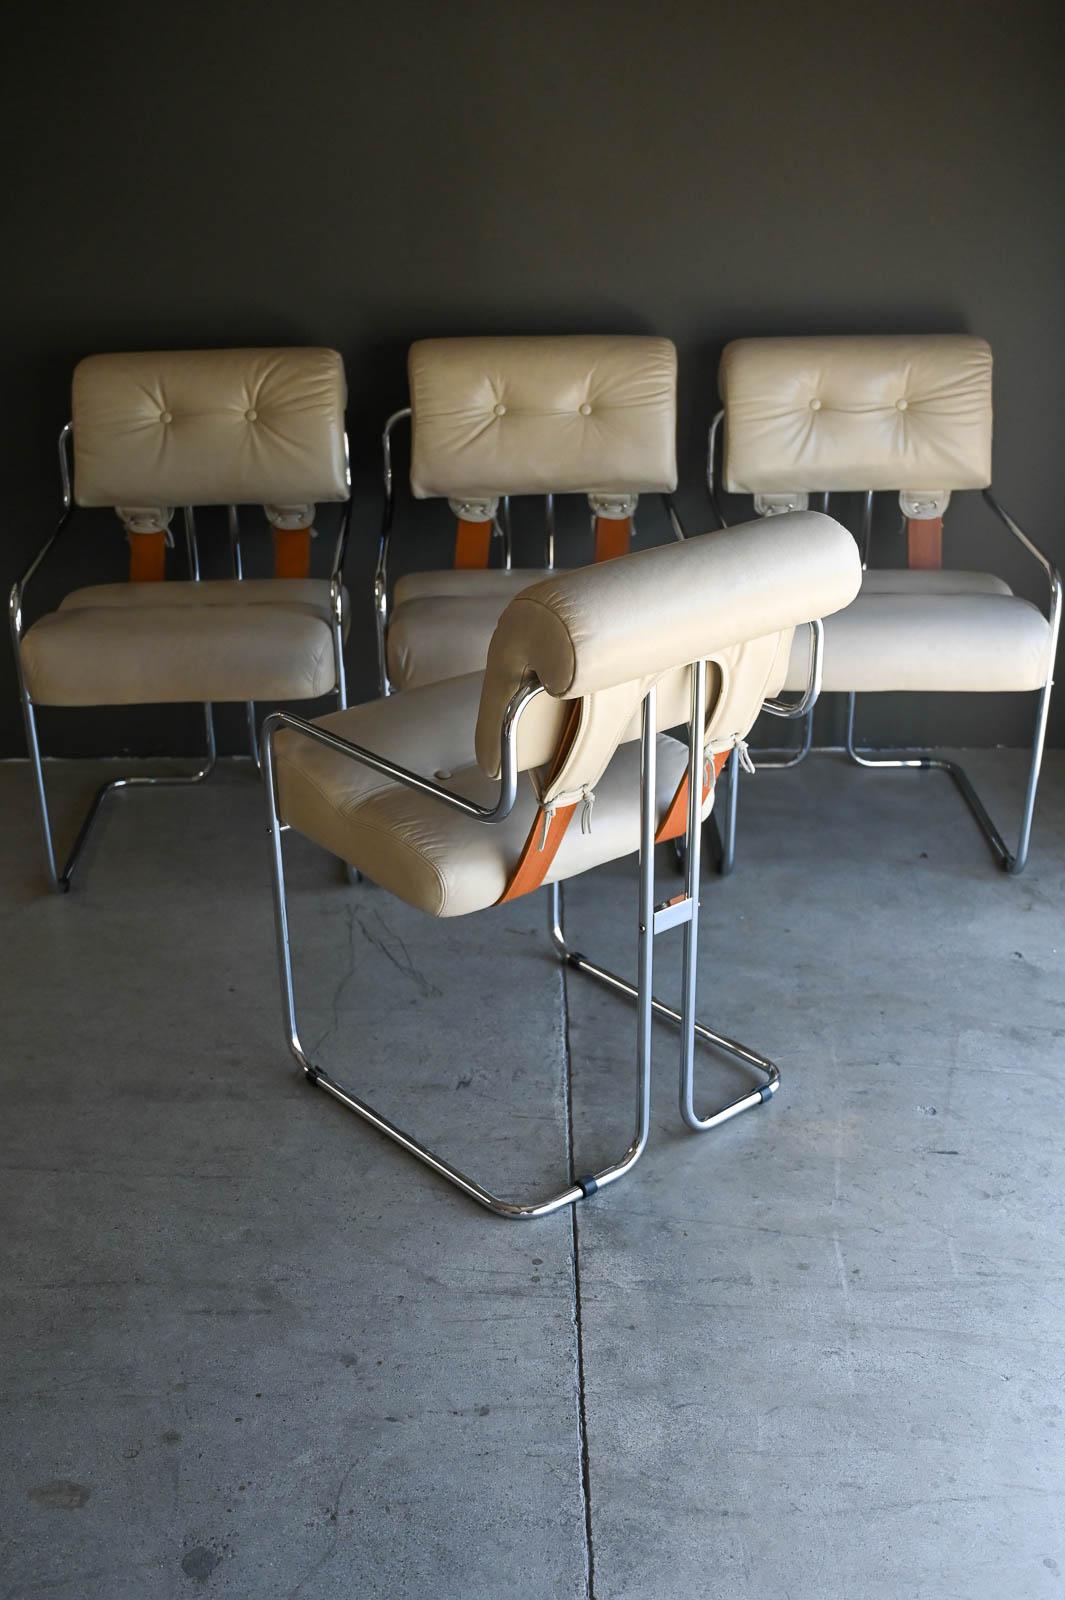 Guido Faleschini Tucroma Stühle für i4 Mariani, Italien ca. 1970.  Schönes cremefarbenes Leder mit originalen geprägten Sattellederriemen und verchromten Rohrrahmen.  Leder ist in sehr gutem Originalzustand, wurde professionell aufbereitet und